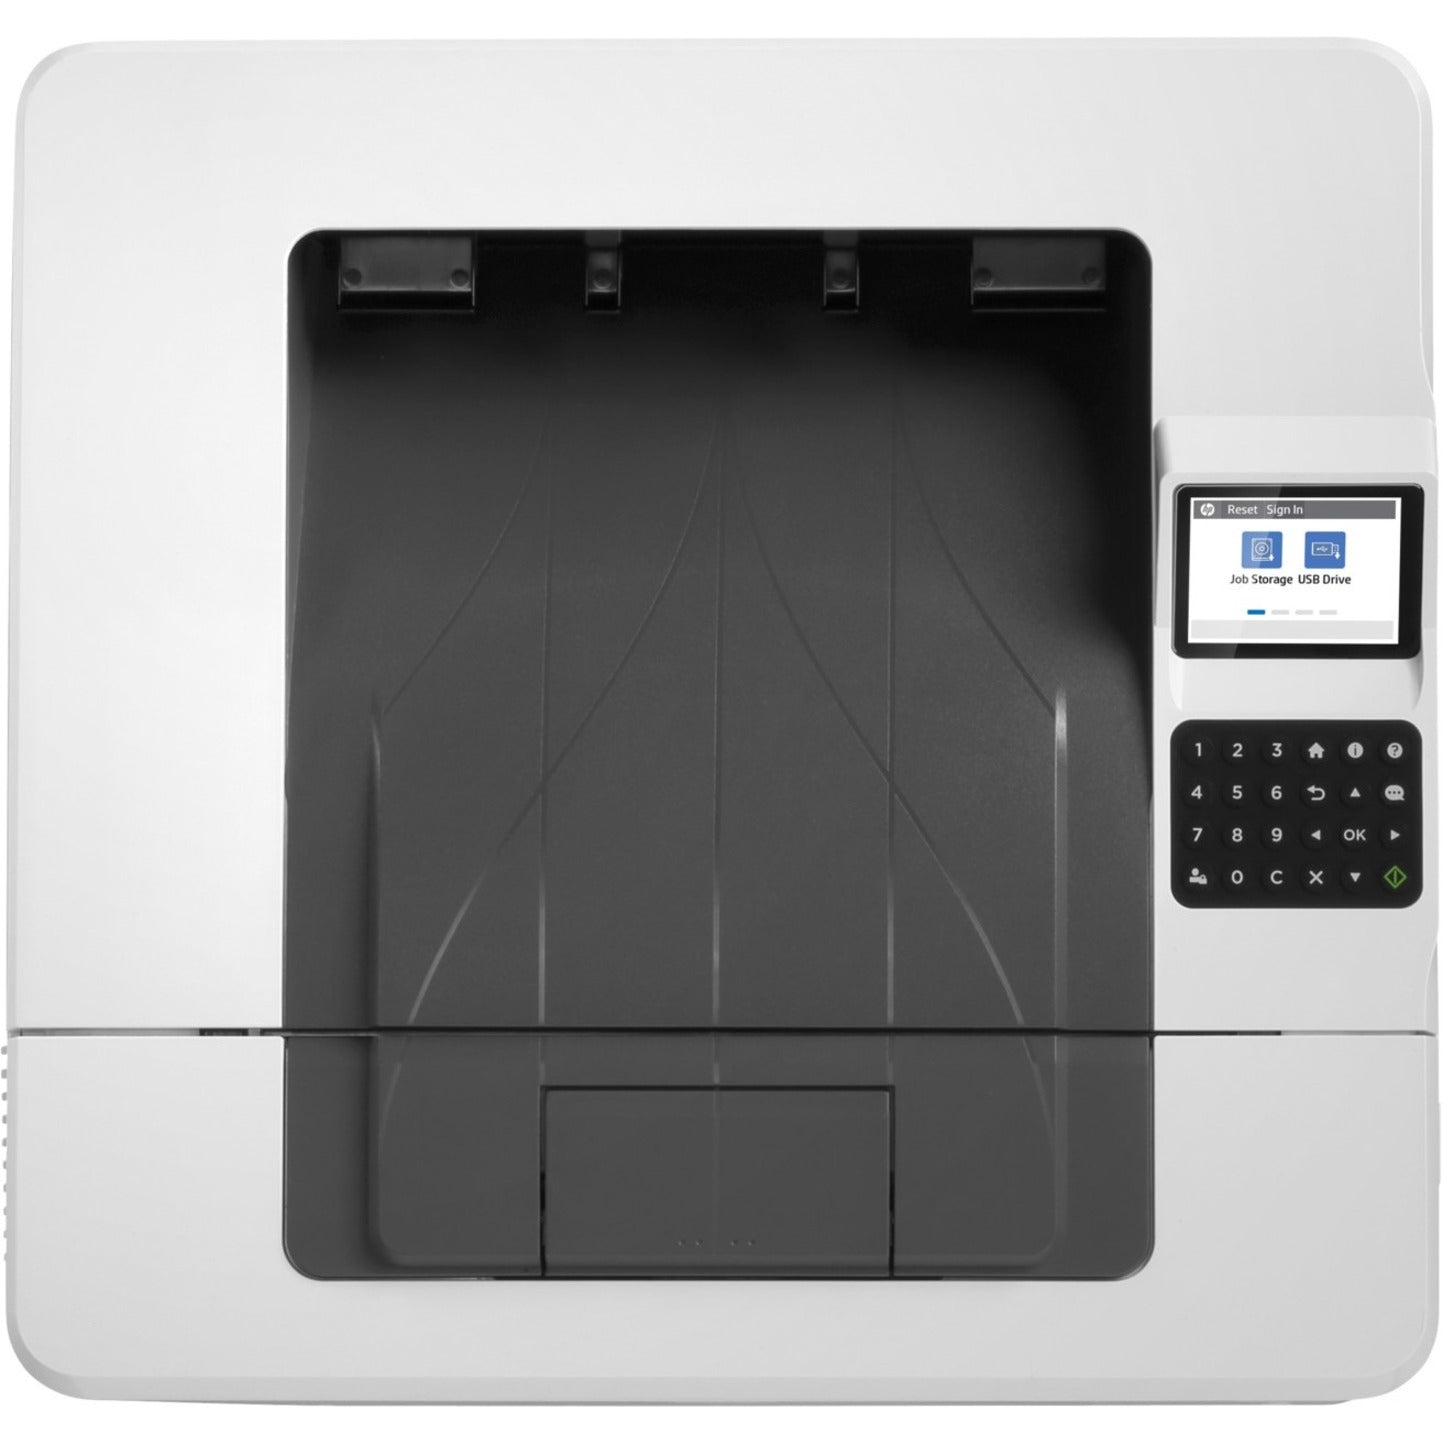 HP LaserJet Enterprise M406dn Desktop Laser Printer - Monochrome (3PZ15A#BGJ)